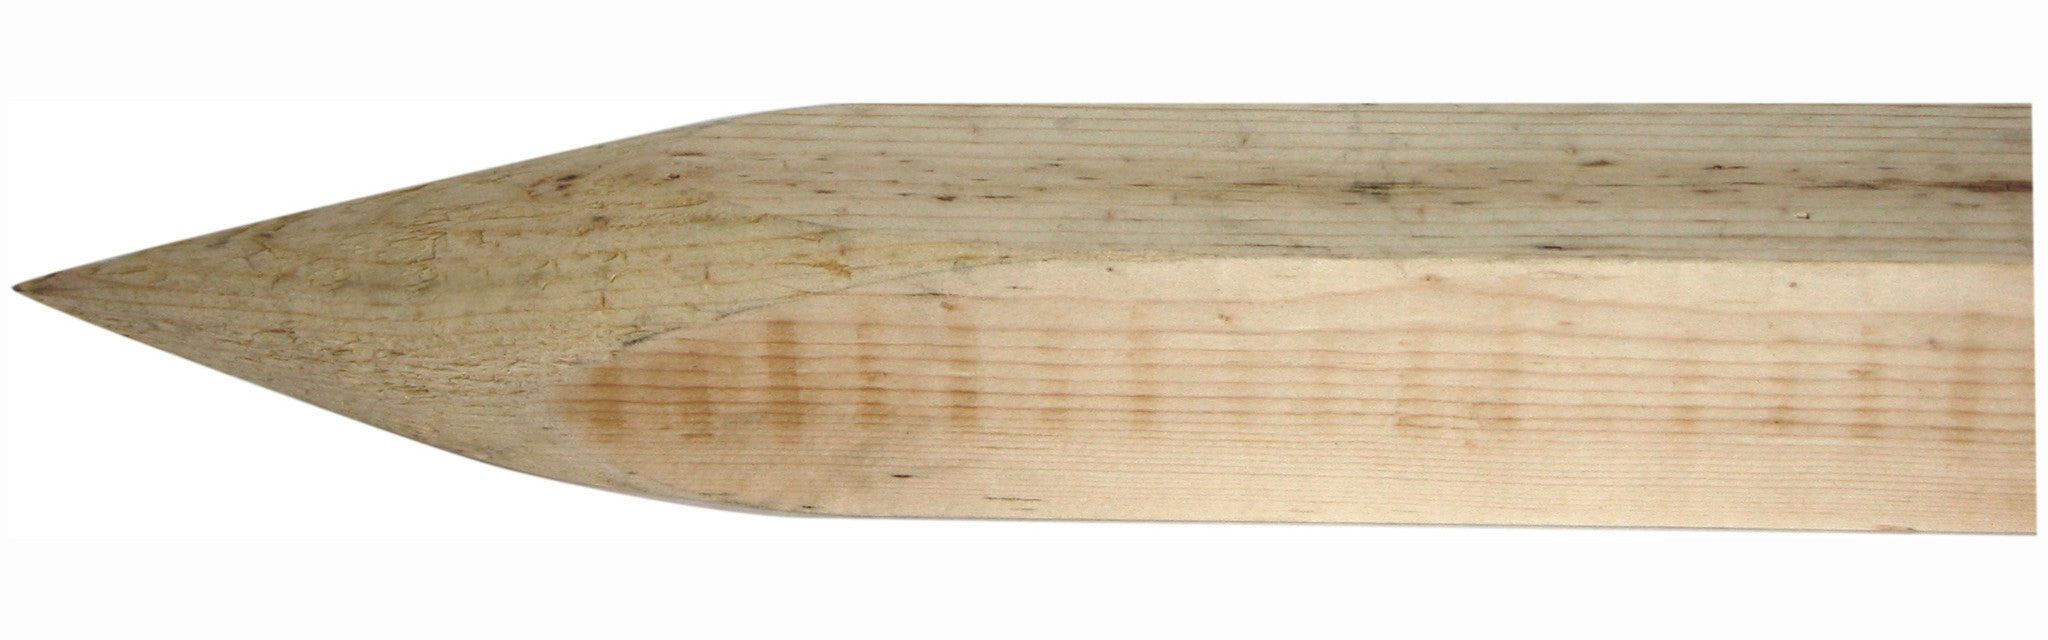 Lumberjack Tools™ 30° Staking Tool™ - ST2000 | Stake Making Tool